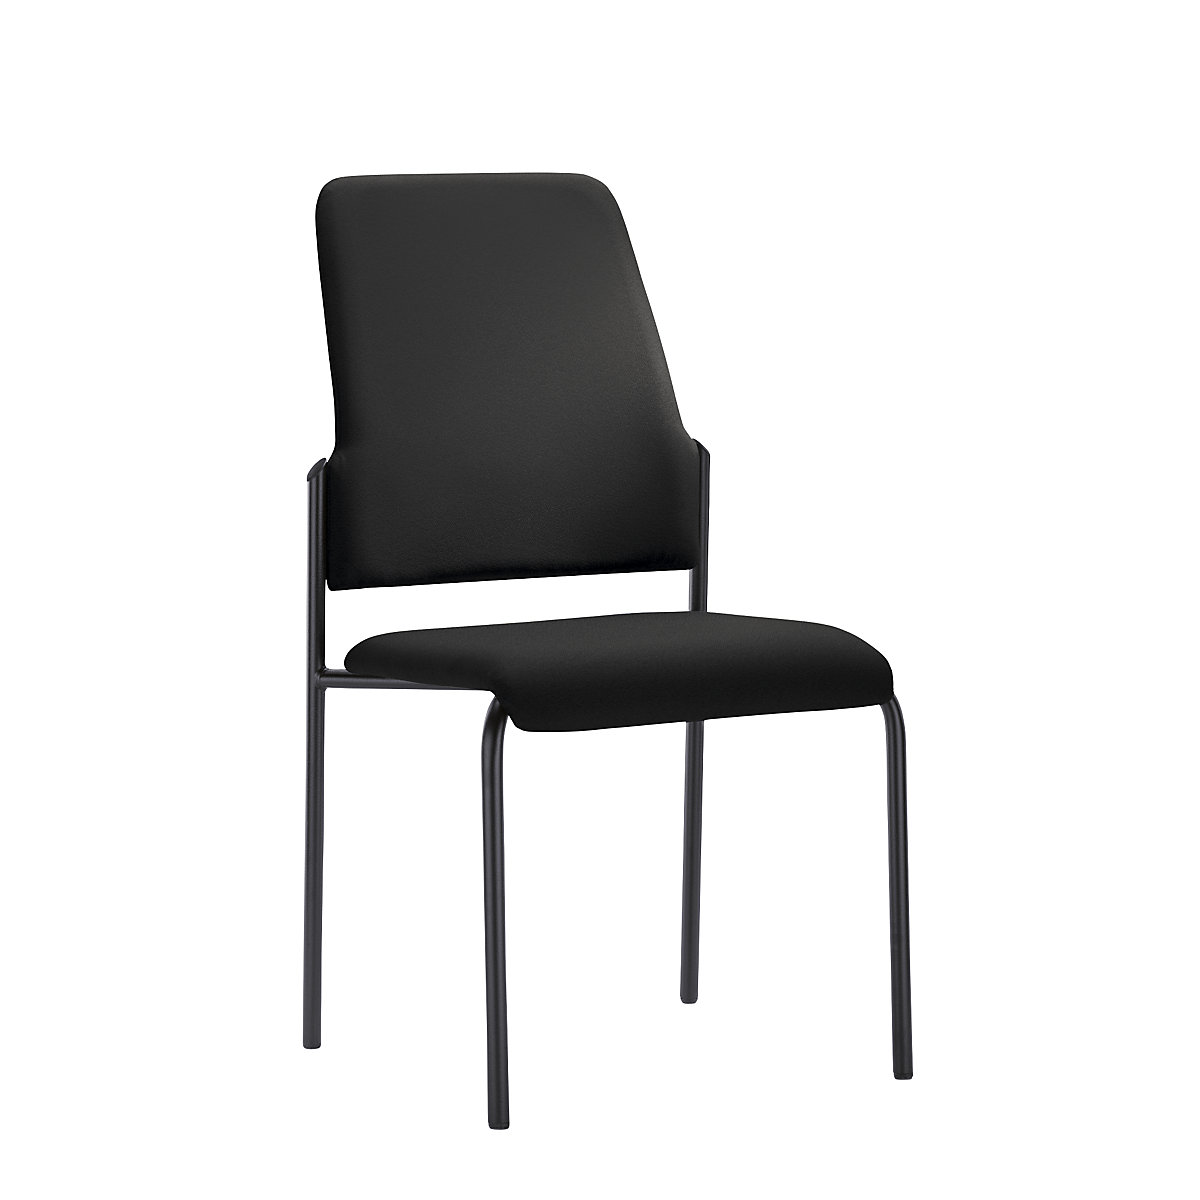 Bezoekersstoel GOAL, met 4 poten, VE = 2 stuks – interstuhl, stoelframe zwart, grafietzwart-6